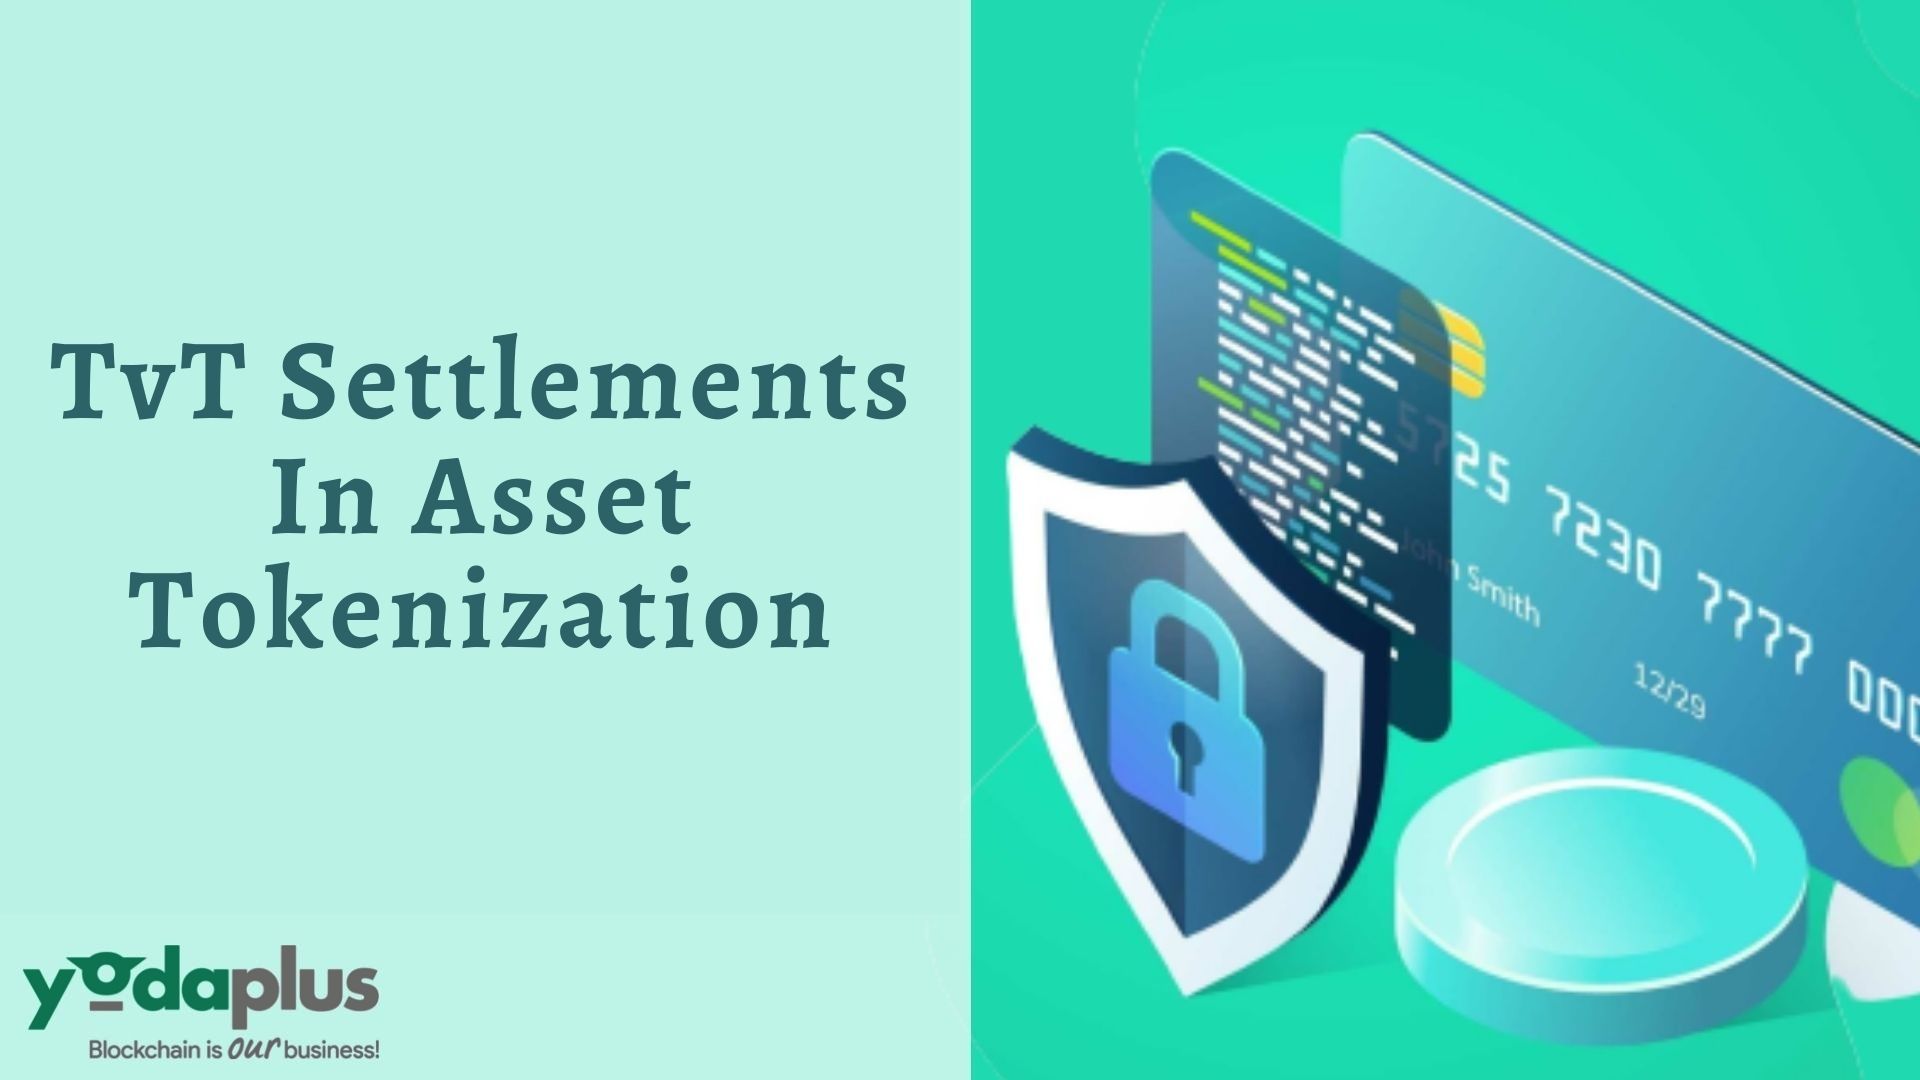 TvT settlements in Asset Tokenization